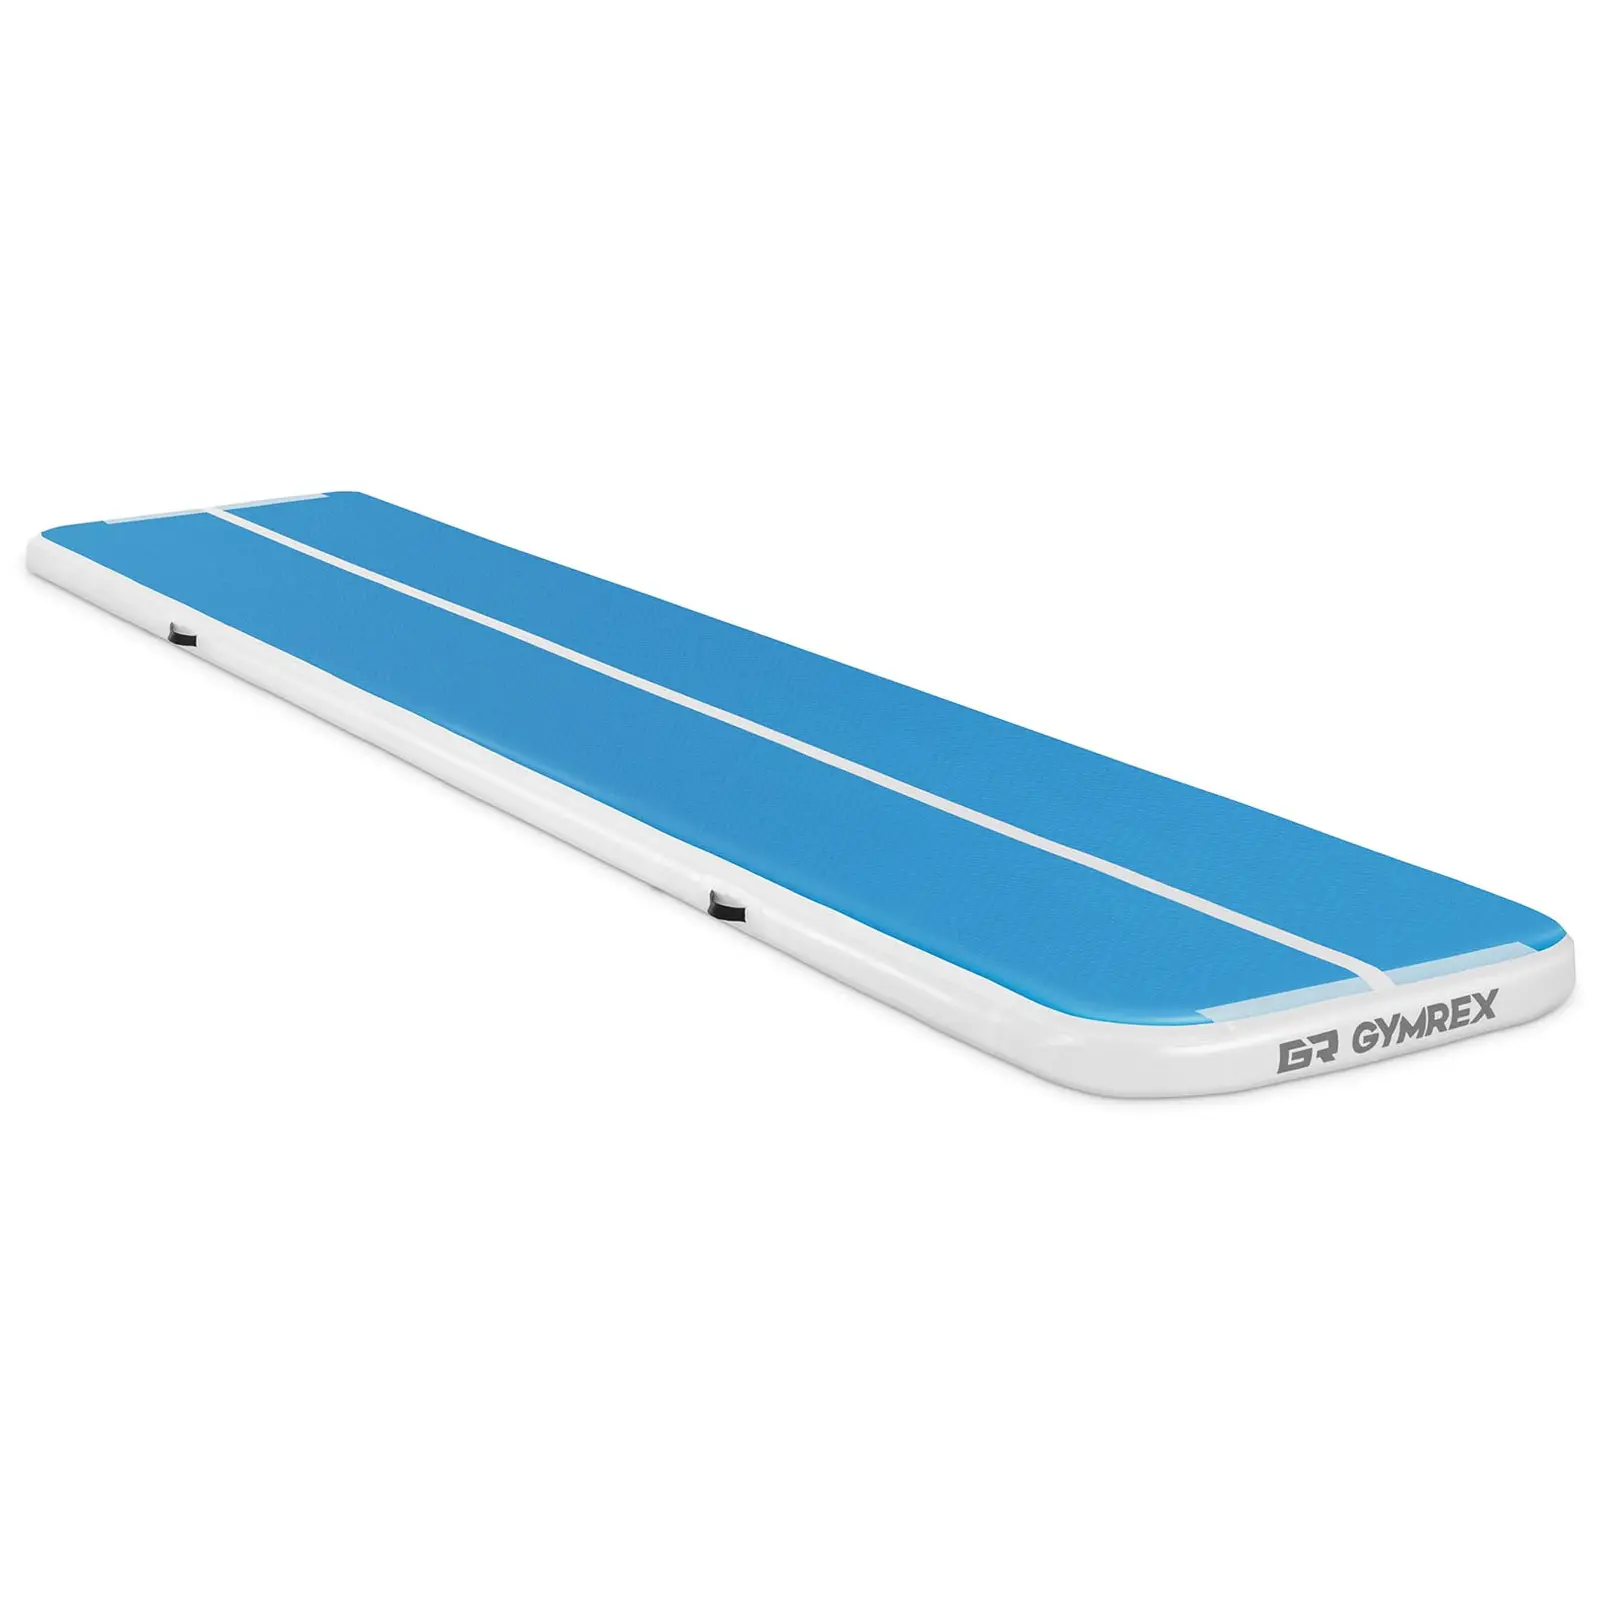 Uppblåsbar gymnastikmatta - 500 x 100 x 10 cm - 190 kg - Blå/vit